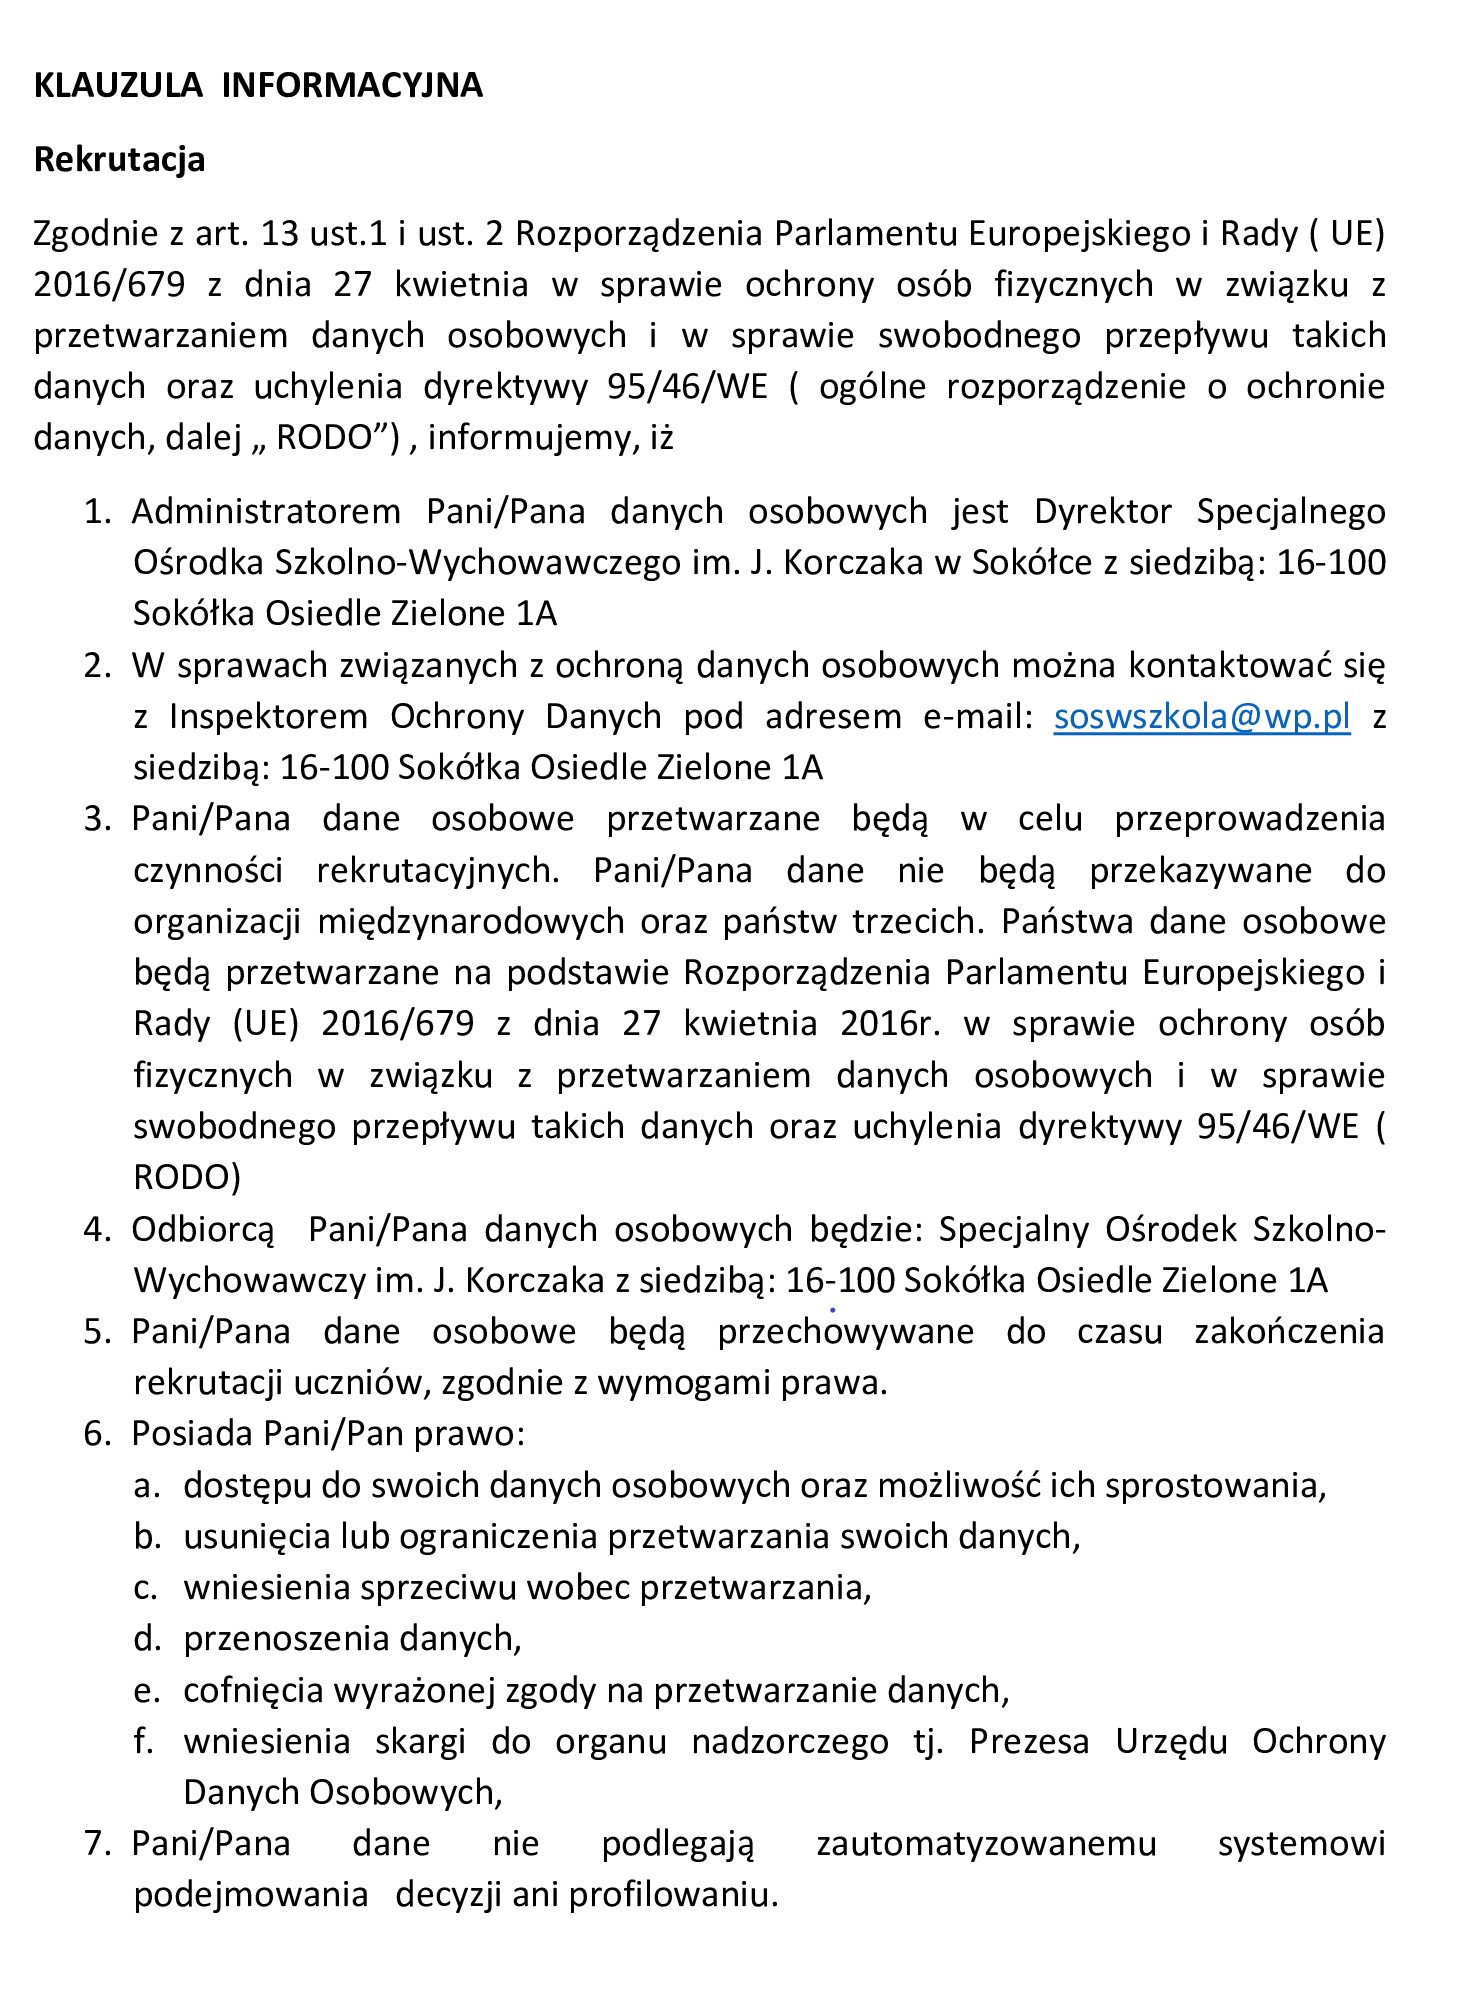 https://www.soswsokolka.pl/images/klauzula-informacyjna-do-rekrutacji.jpg